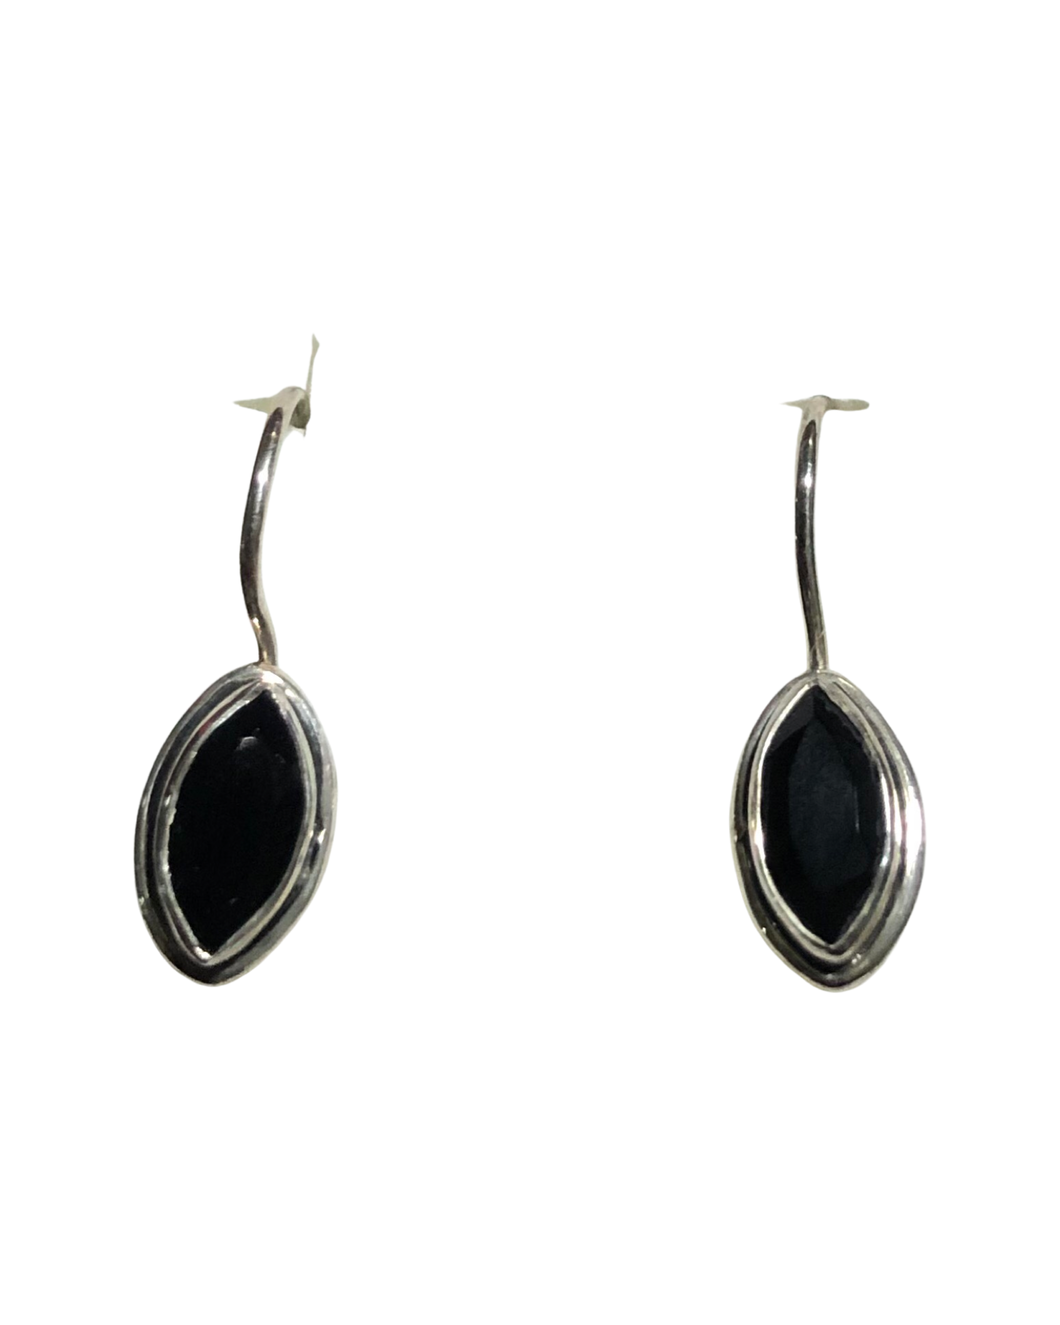 Black Onyx Sterling Silver Earrings   (E43)